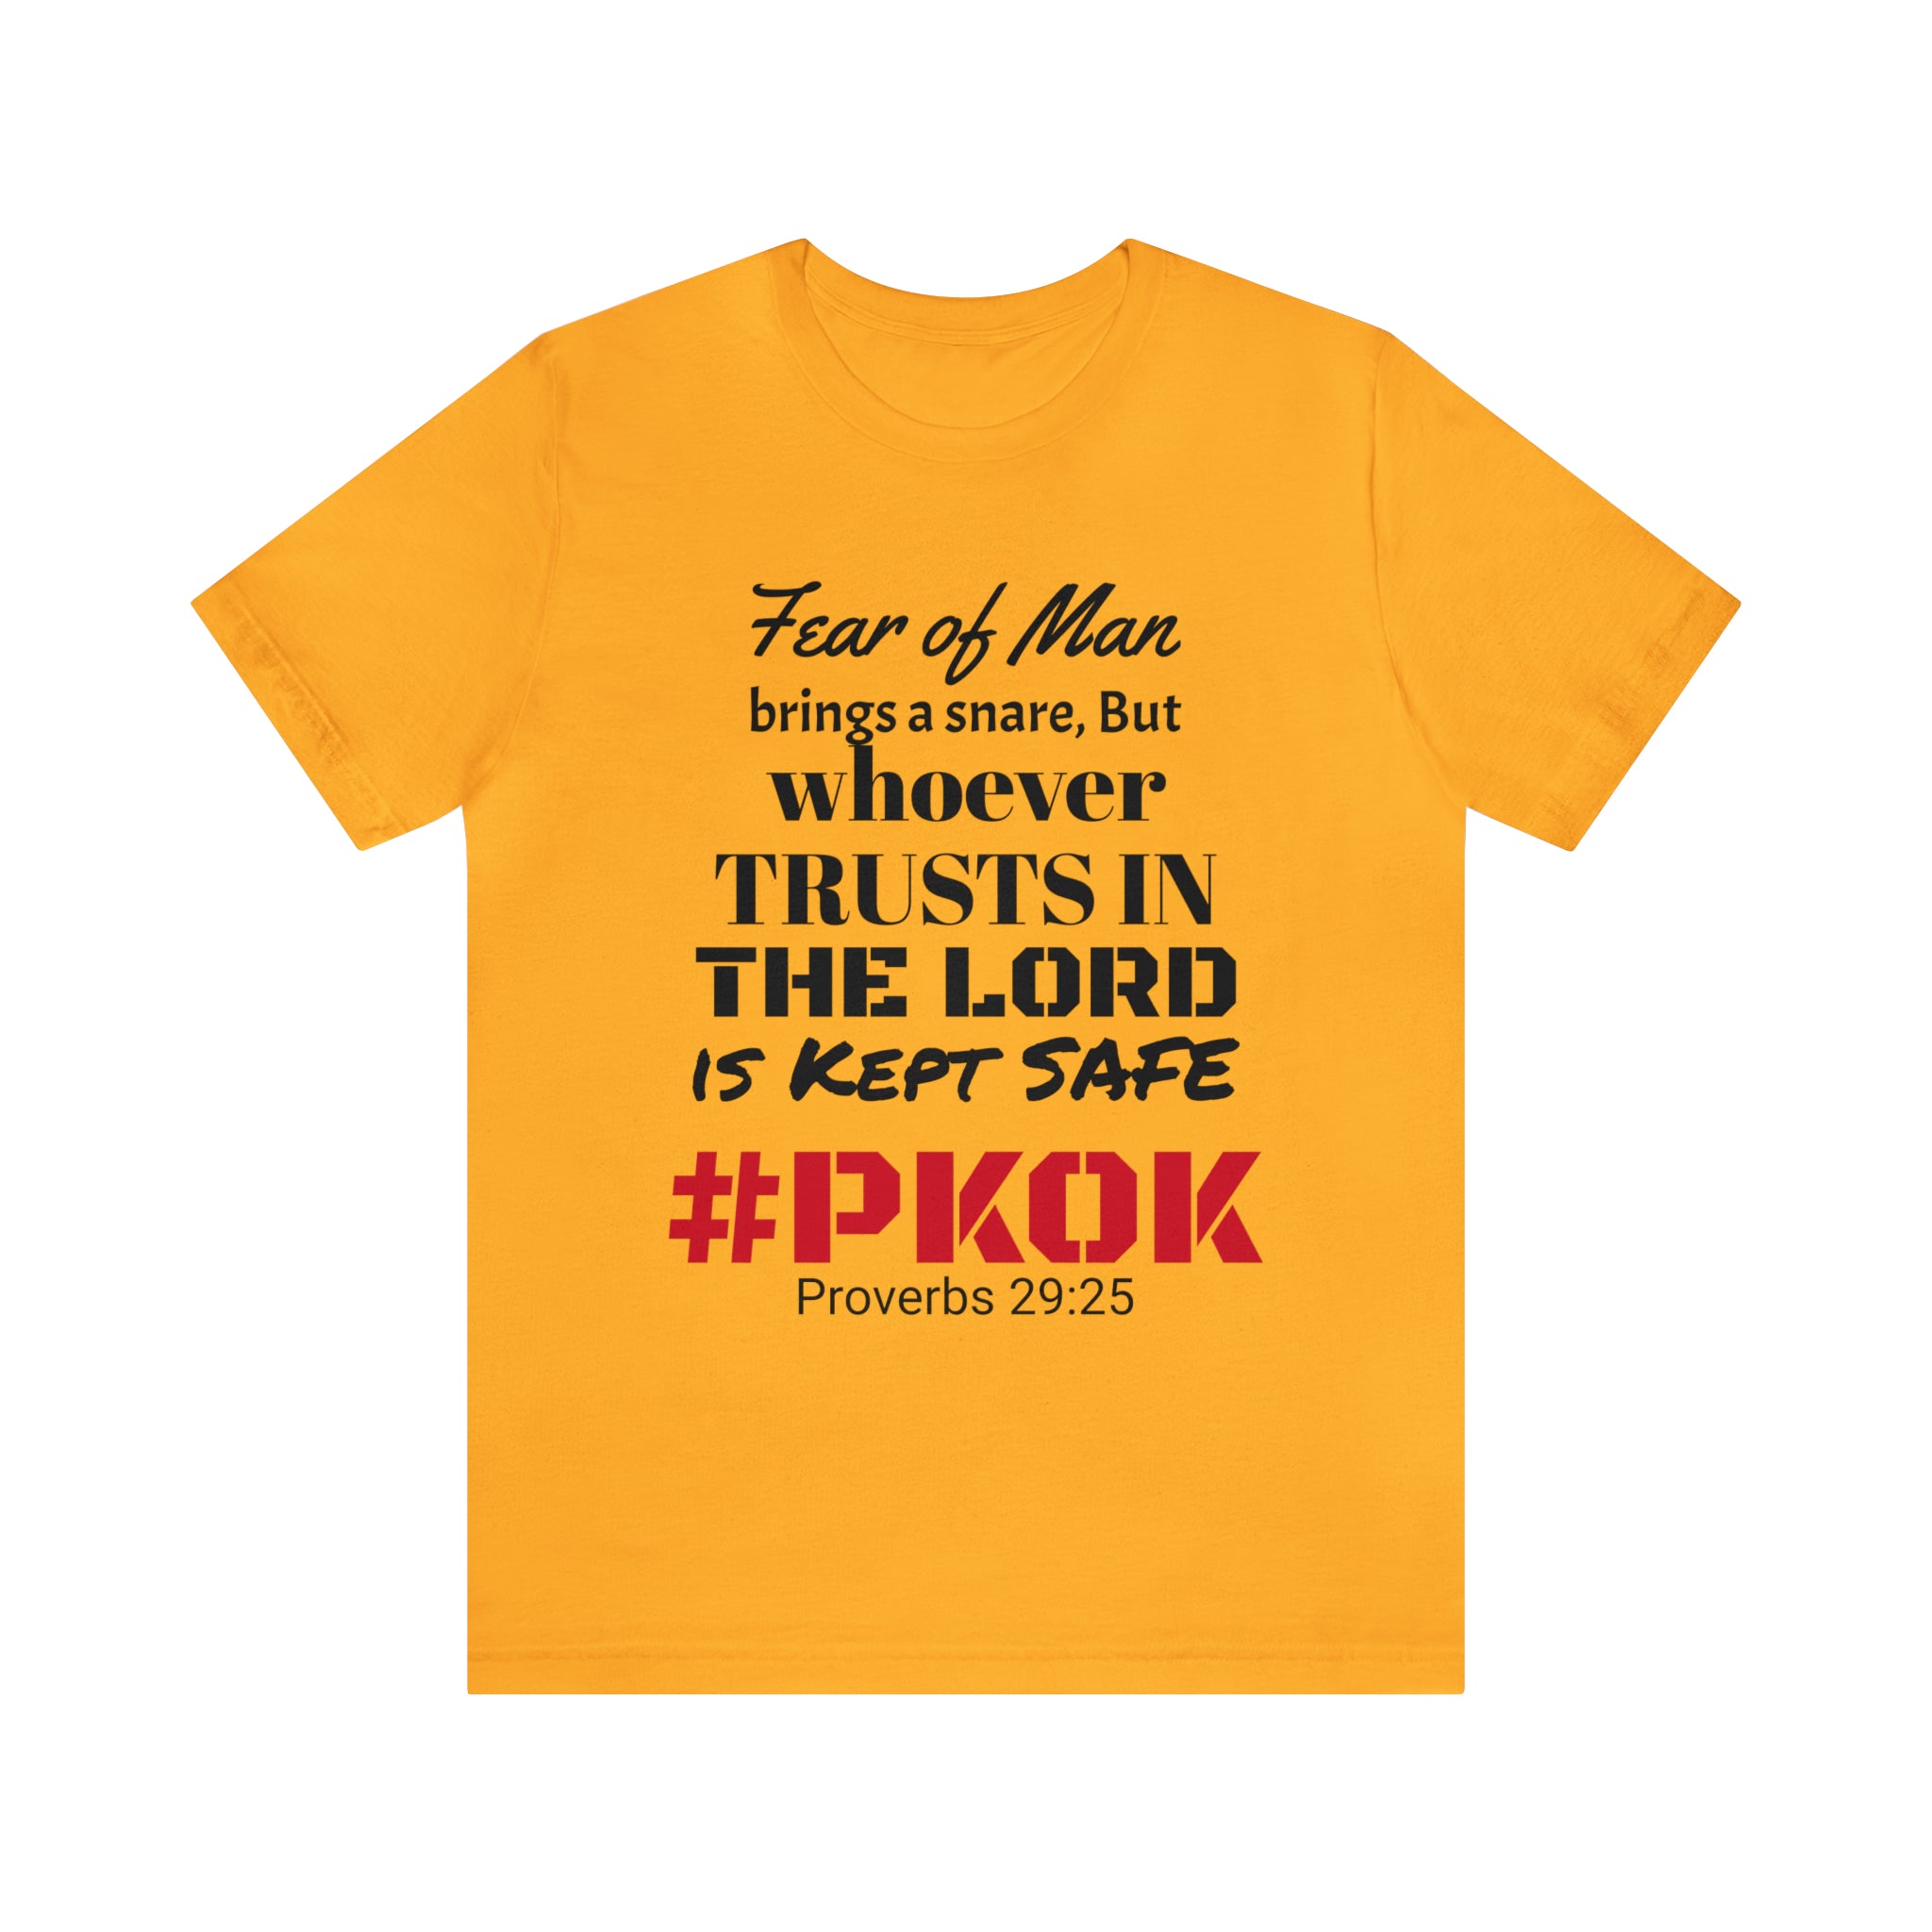 #PKOK #Scripture #Proverbs 29:25 #2Timothy1:7 #Unisex #Jersey #ShortSleeve #Tee